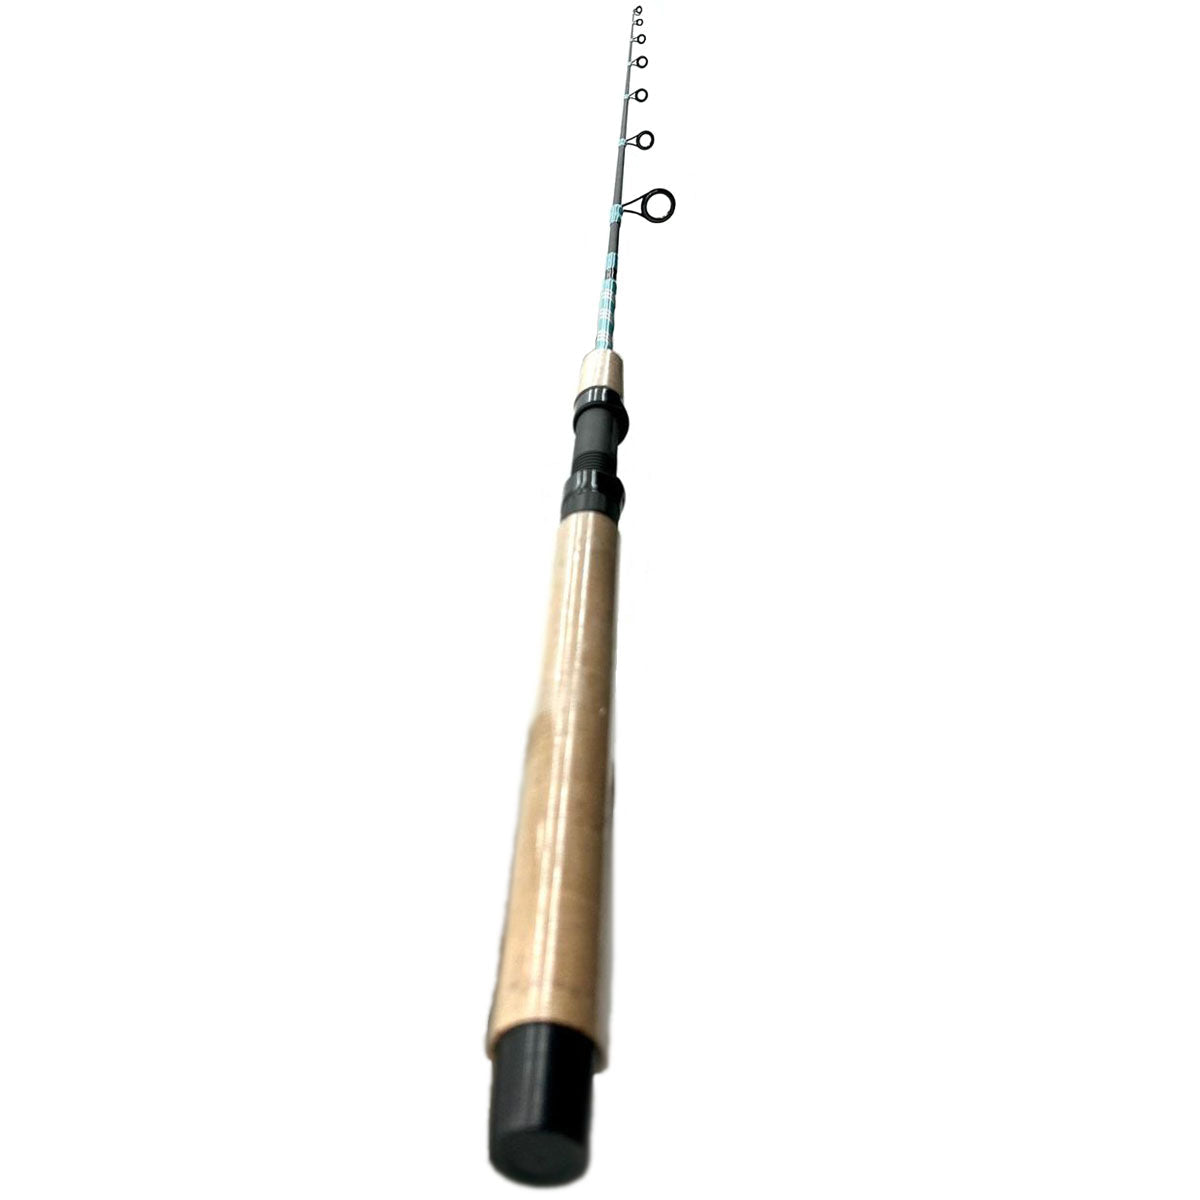 Kayak Fishing Rod 5'5 spinning rod